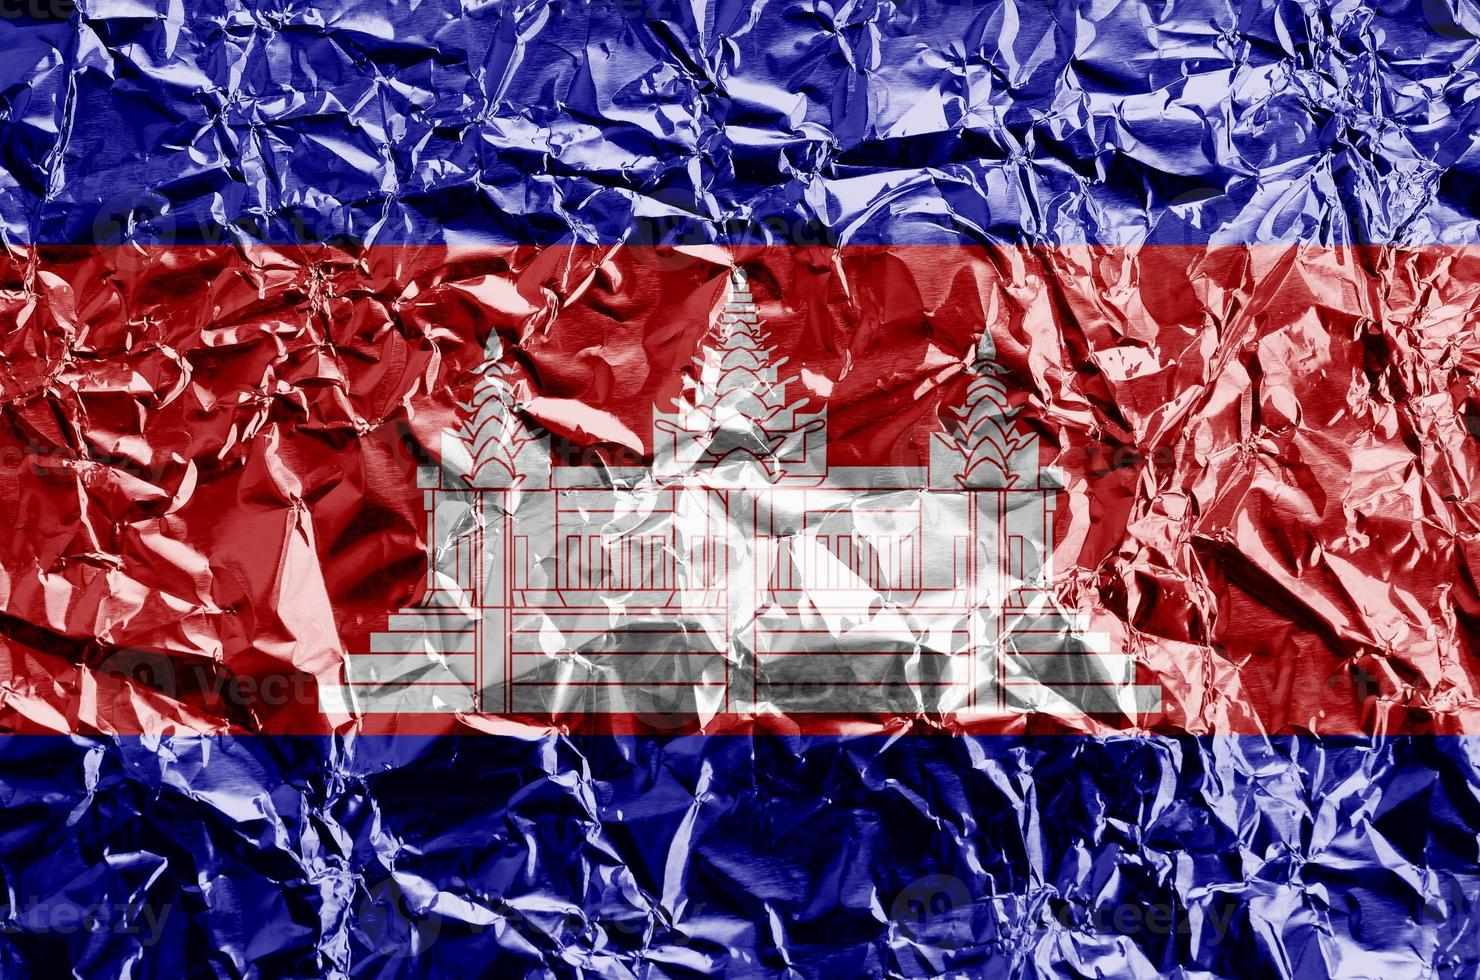 cambodia flagga avbildad i måla färger på skinande skrynkliga aluminium folie närbild. texturerad baner på grov bakgrund foto